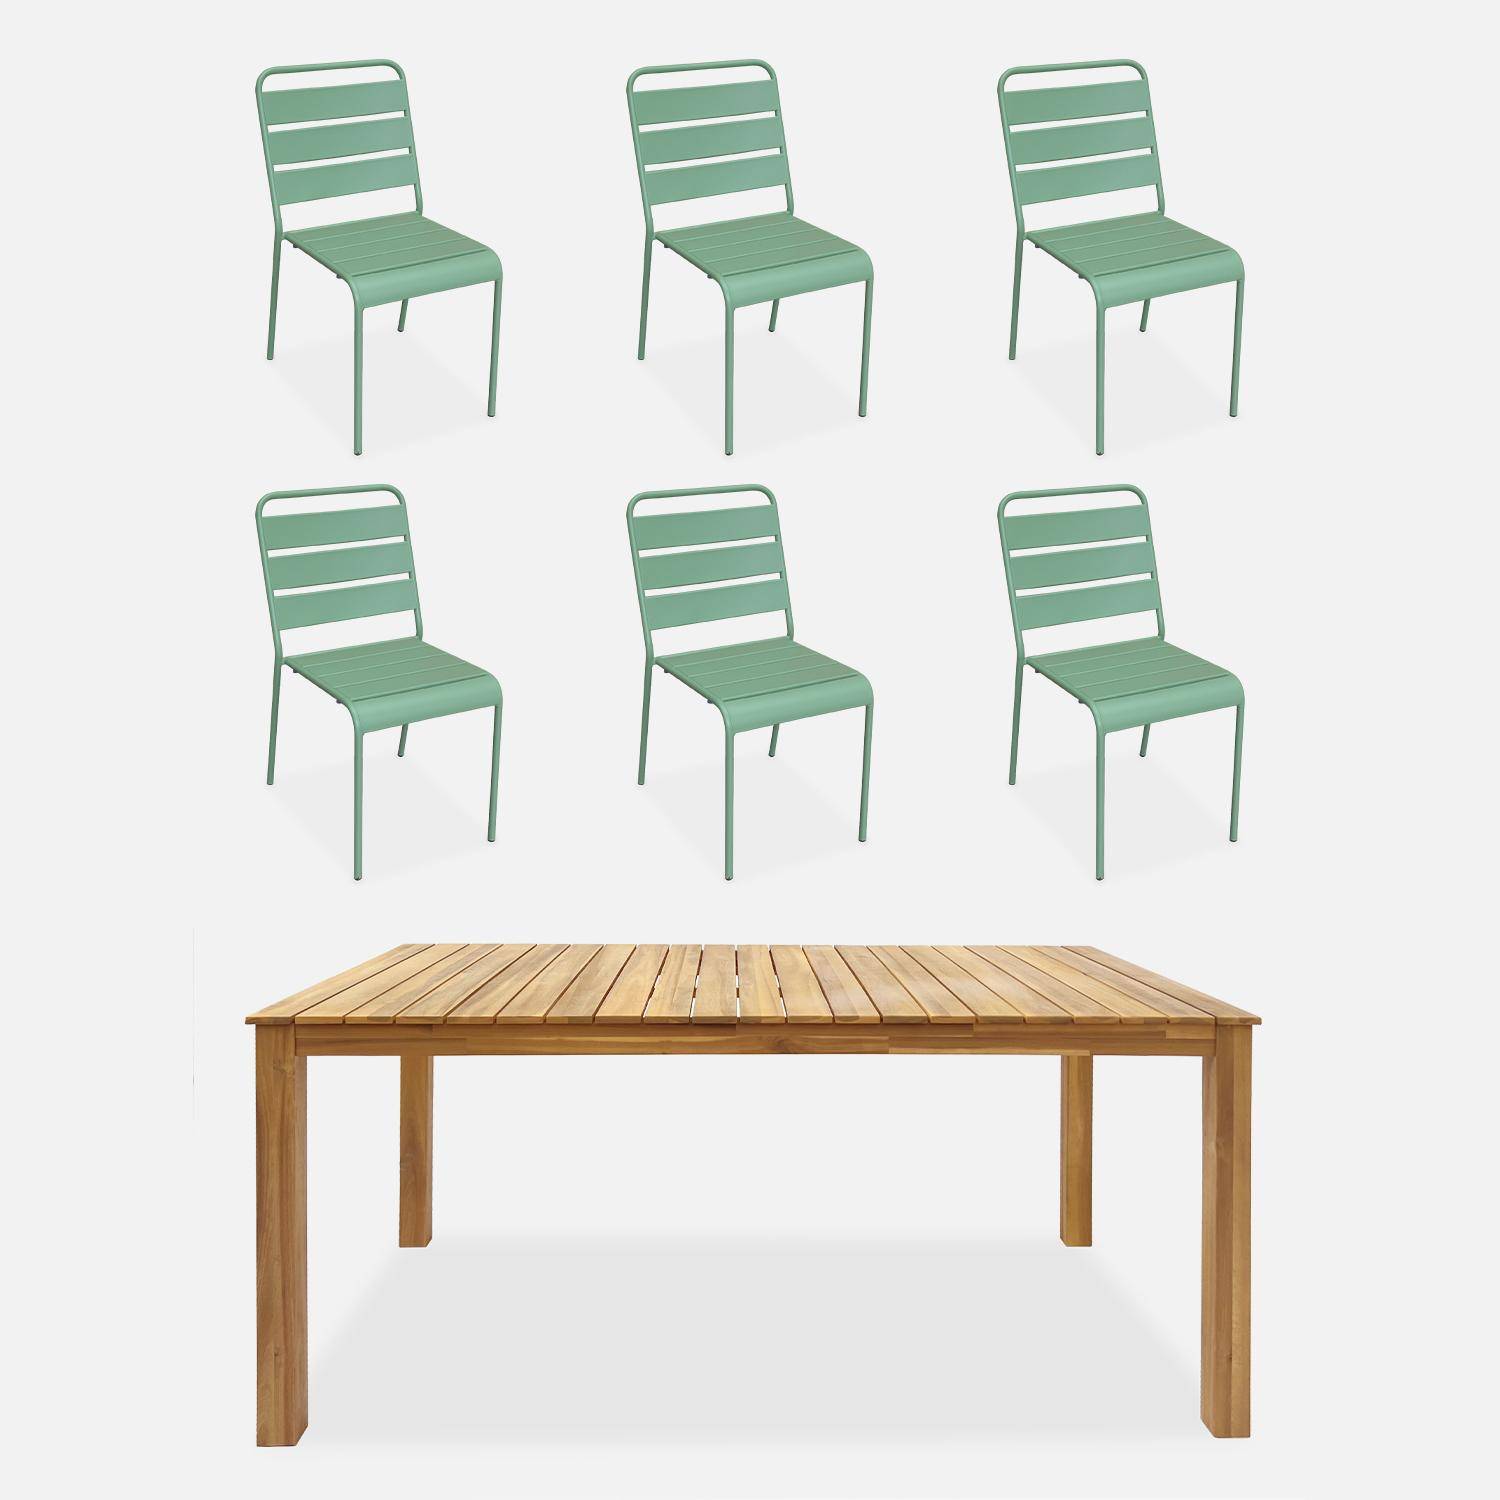 Table intérieur / extérieur bois d'acacia + 6 chaises empilables en métal vert jade,sweeek,Photo1